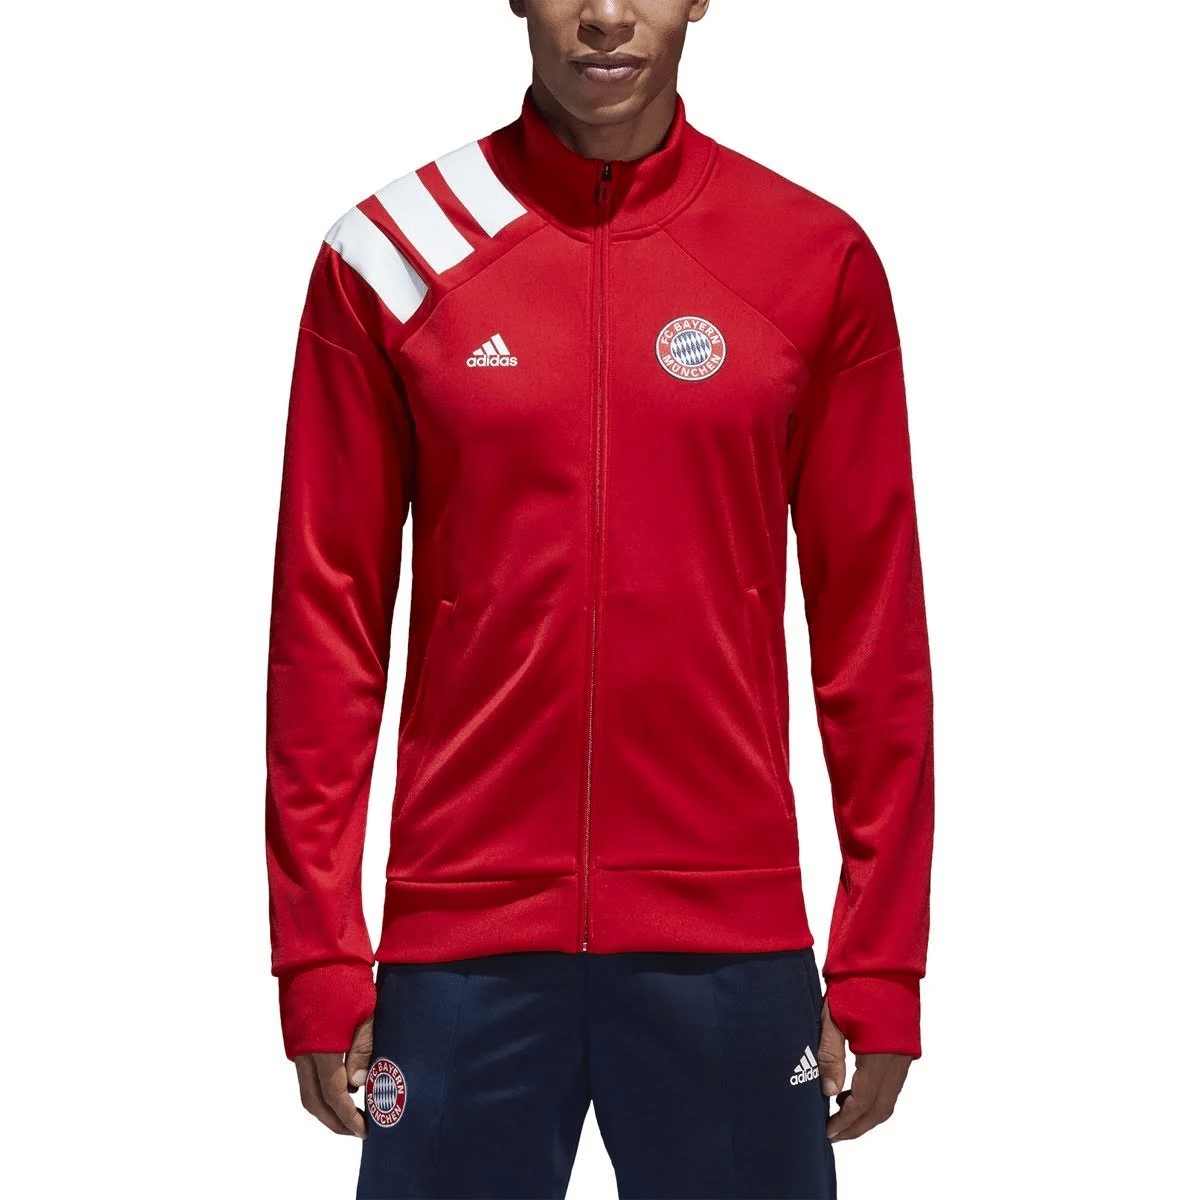 Adidas Bayern Munich Track Jacket - Thefalconwears